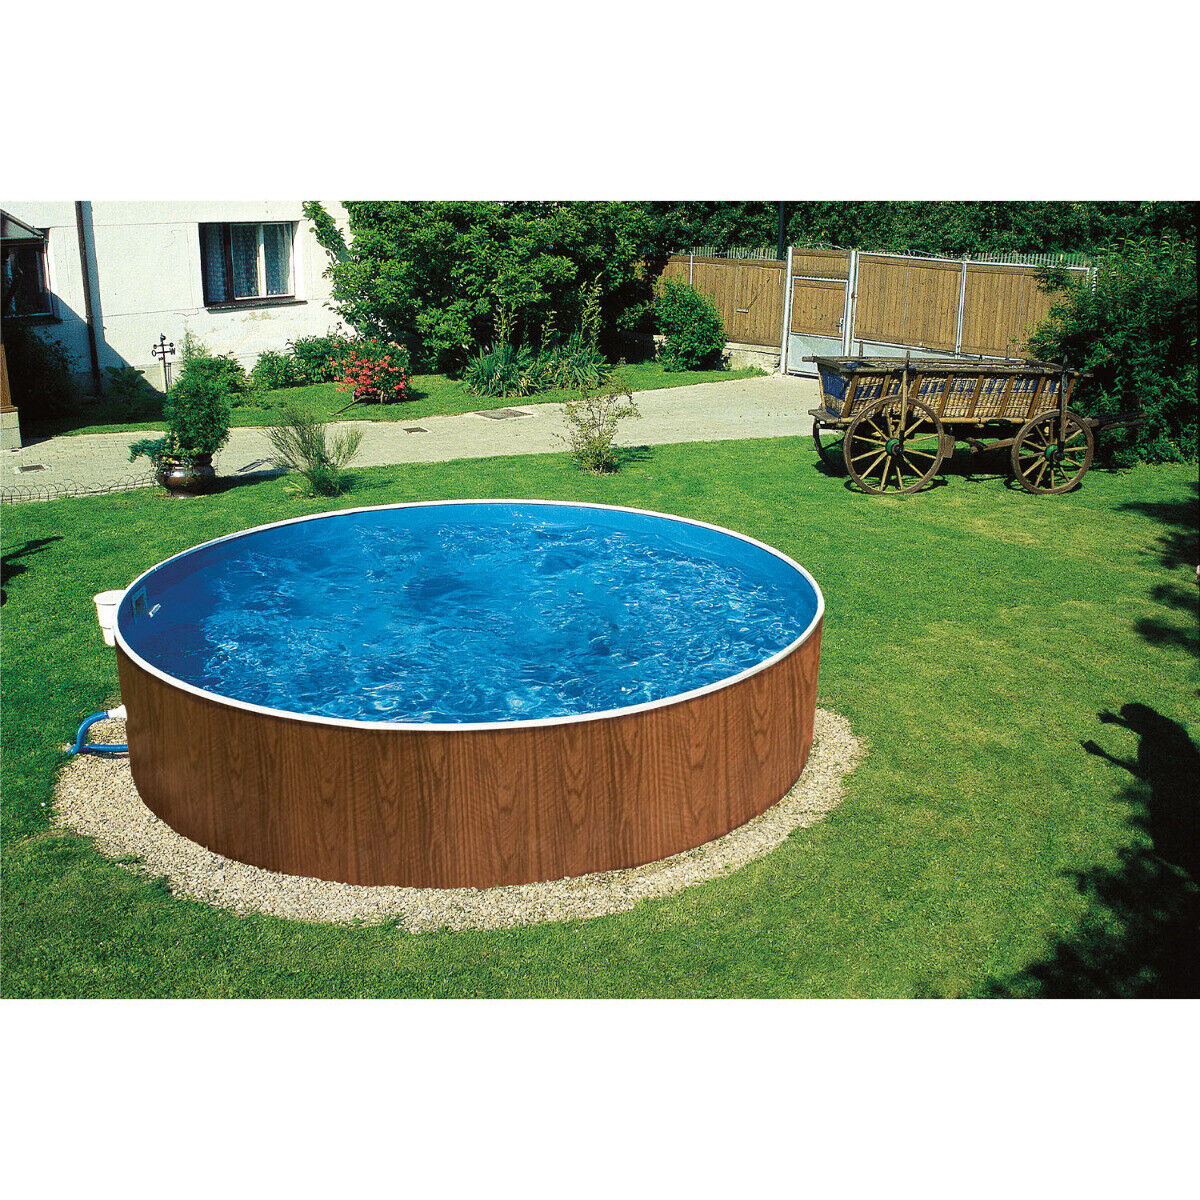 Stahlwandpool Splash Pool Einzelbecken rund 360 x 120 cm holz Skimmer Vlies